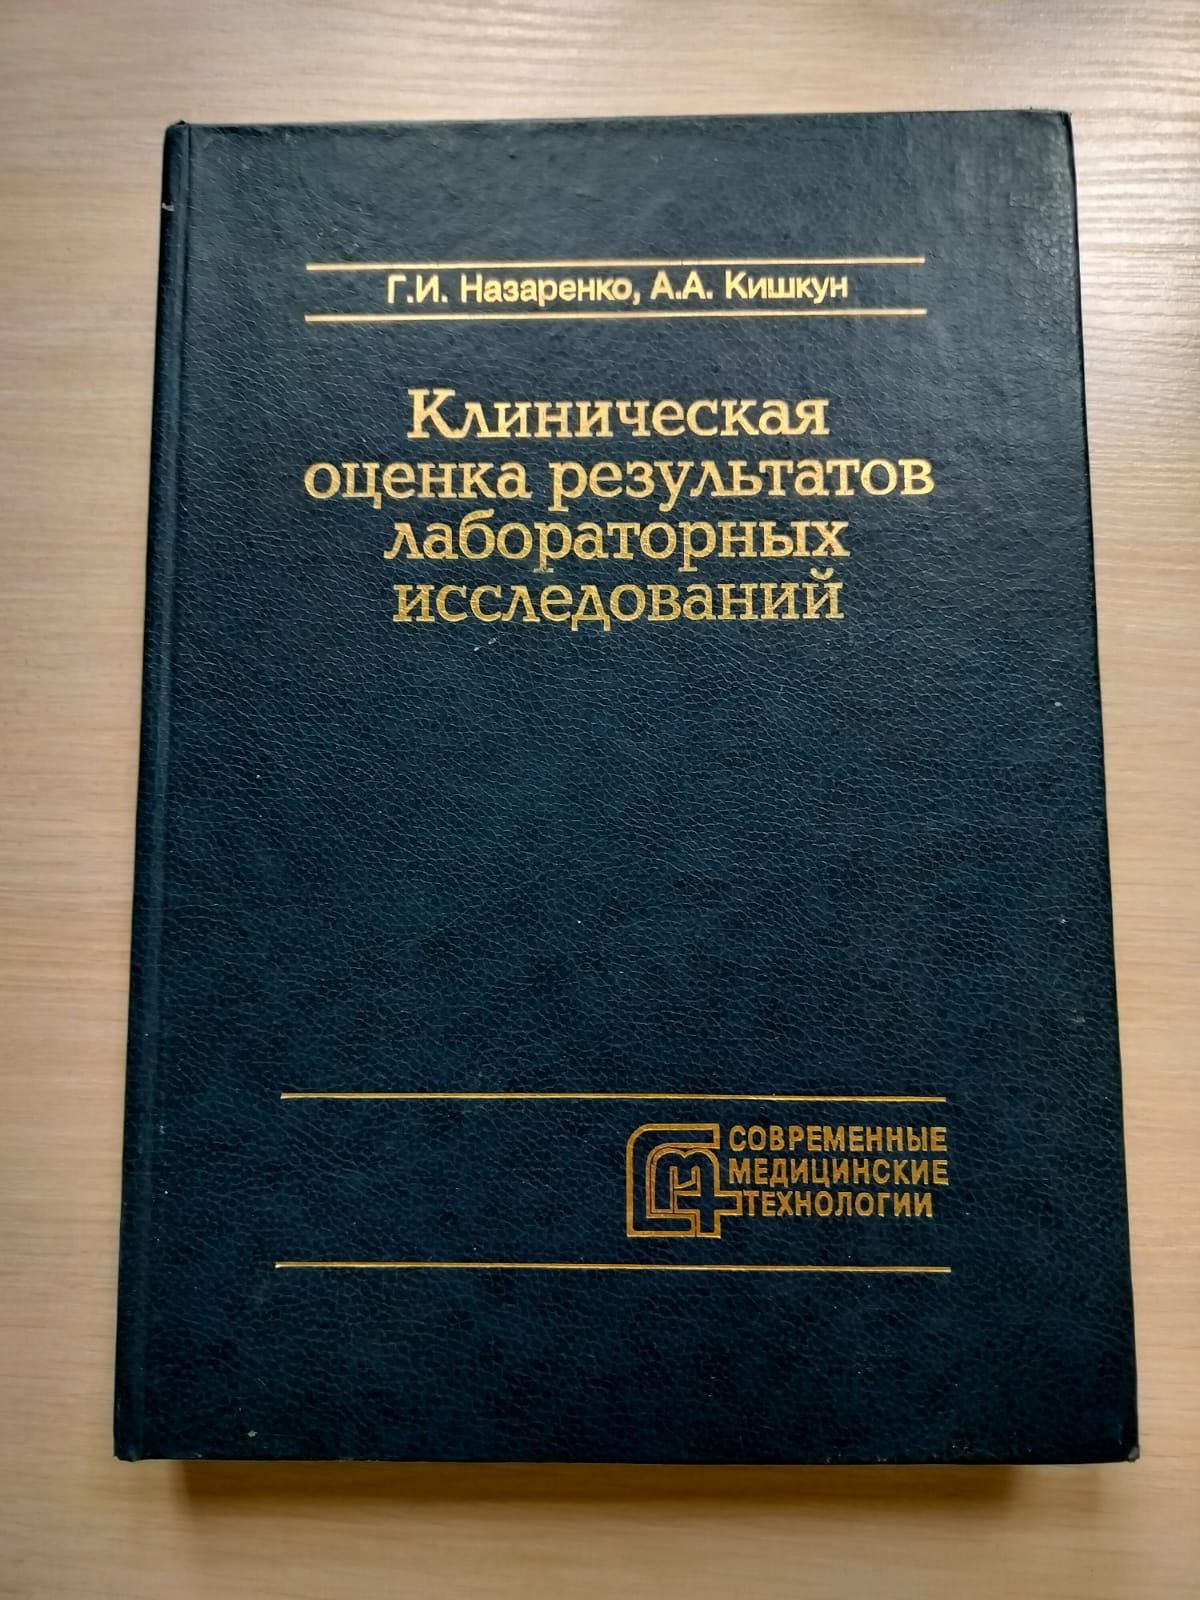 Медицинские книги Русско-казахский, Английско-казахский мед словари